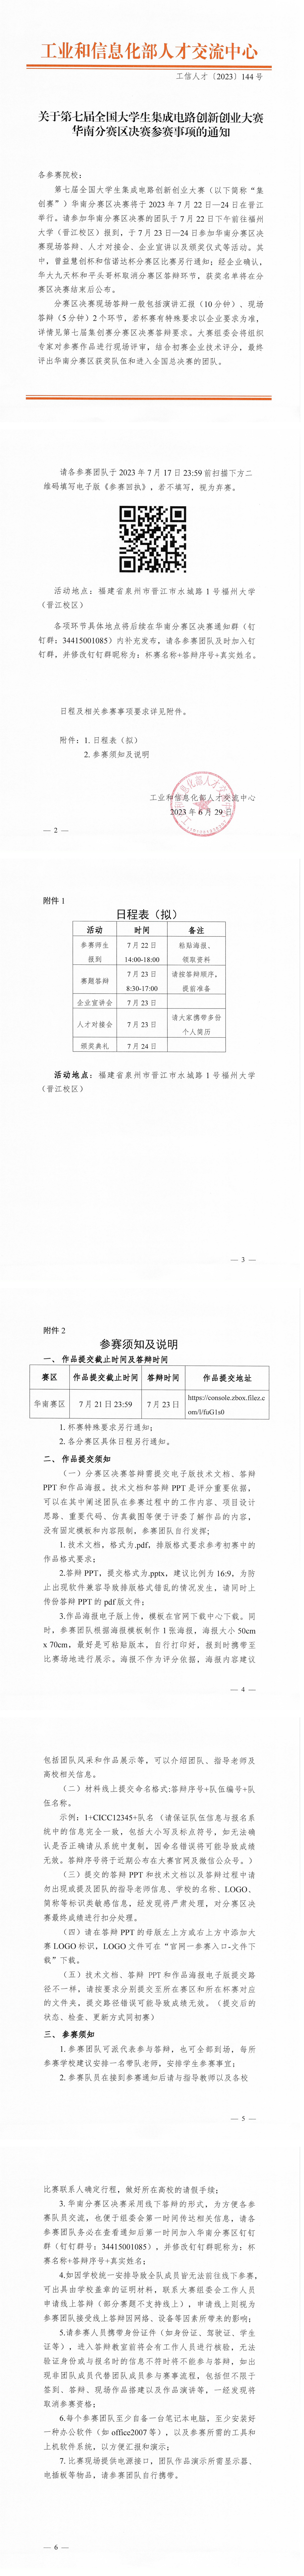 第七届集创赛华南分赛区决赛通知（7月22-24日）- 晋江_00(1).png